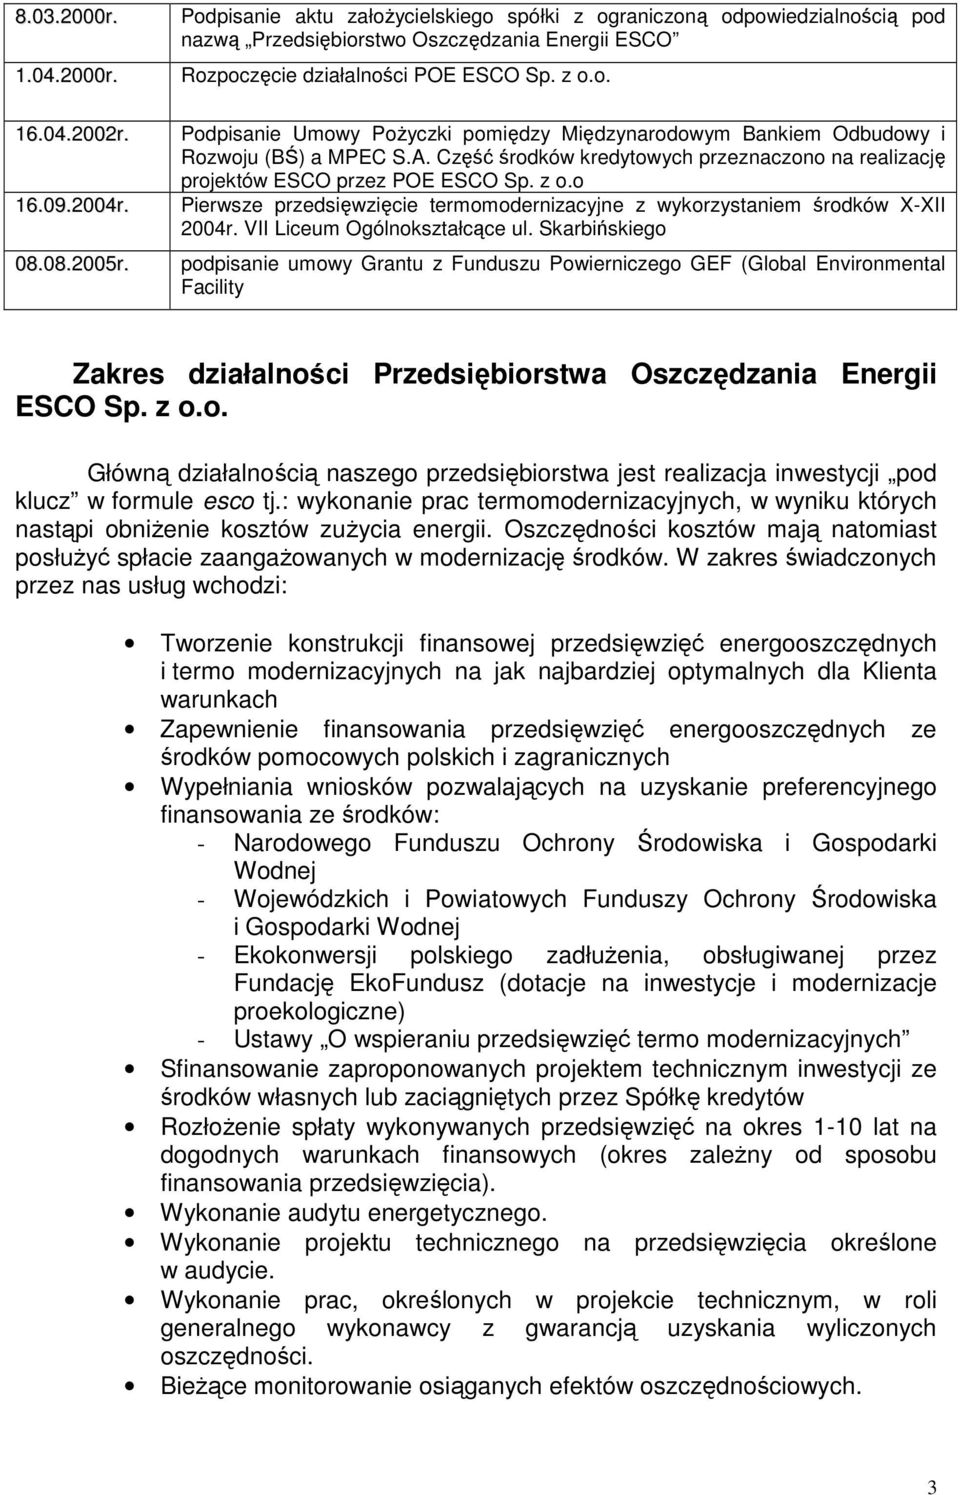 A. Część środków kredytowych przeznaczono na realizację projektów ESCO przez POE ESCO Sp. z o.o Pierwsze przedsięwzięcie termomodernizacyjne z wykorzystaniem środków X-XII 2004r.